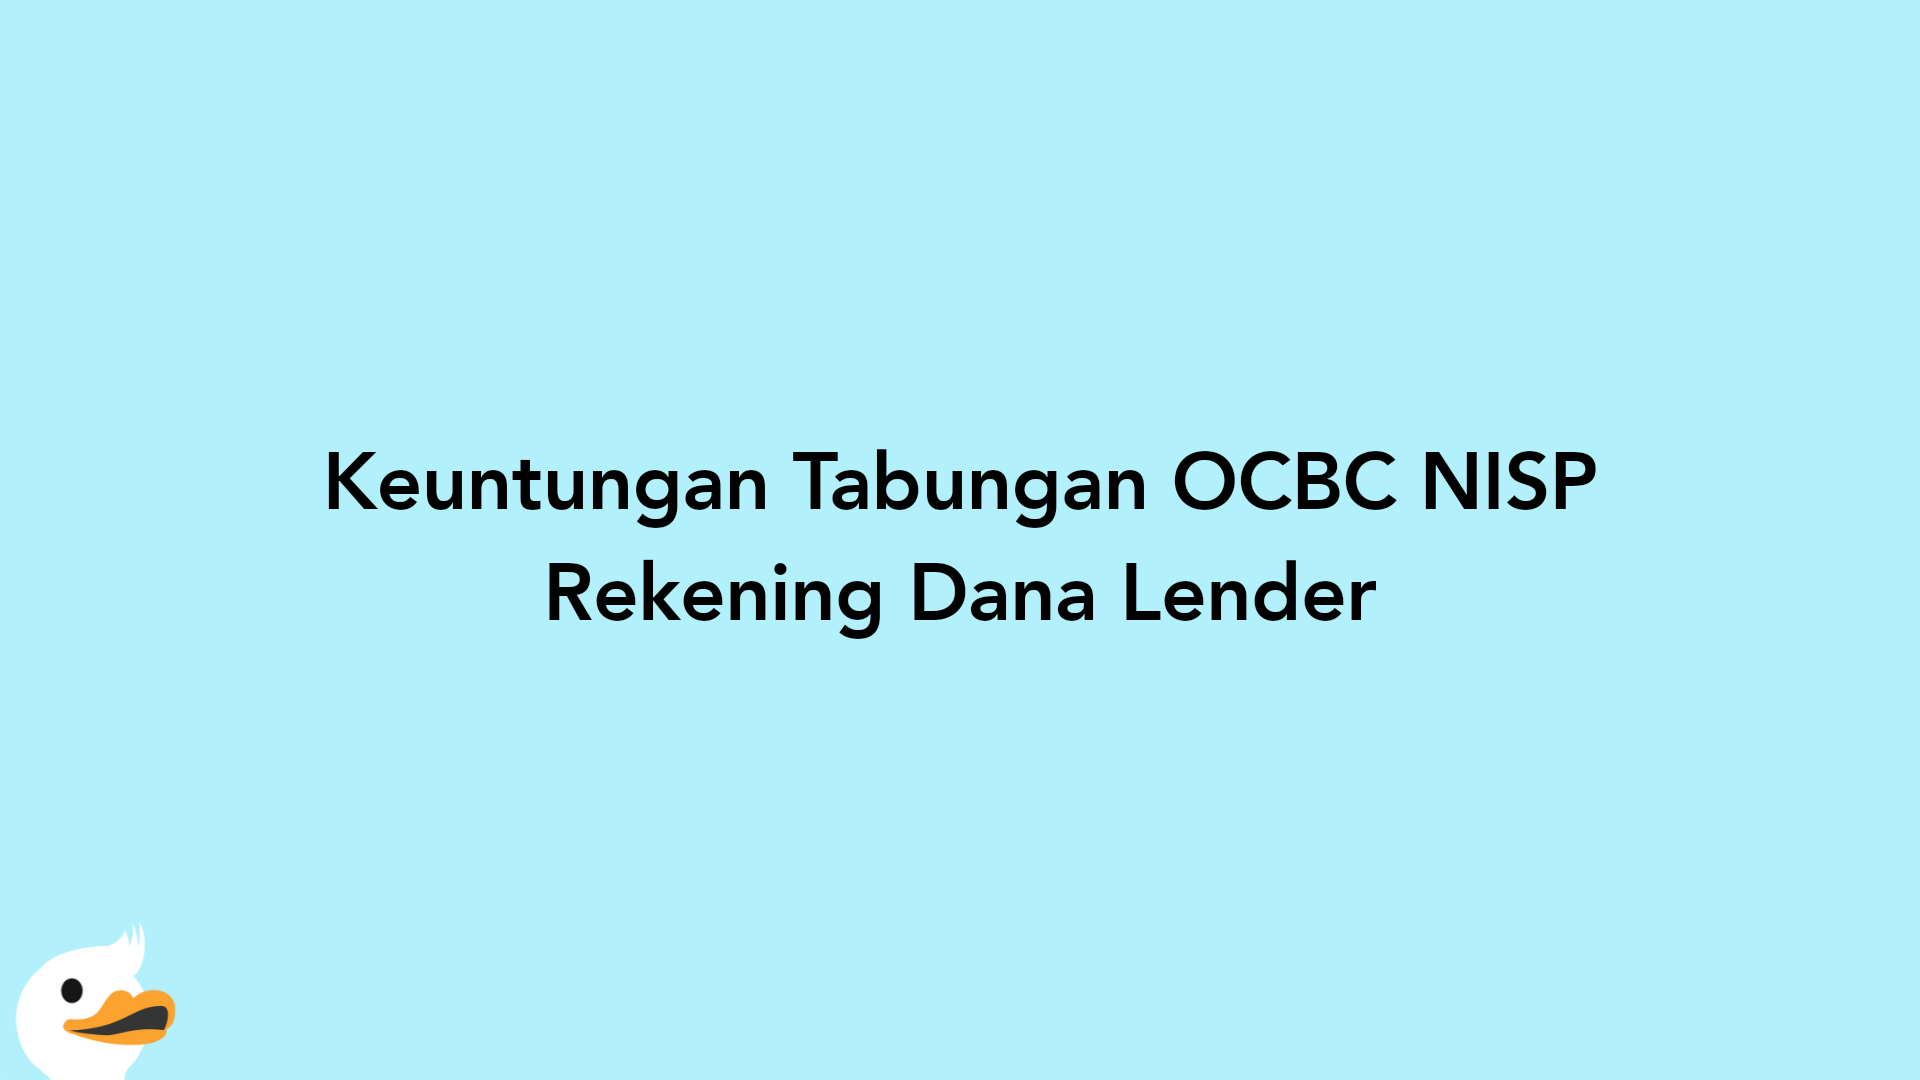 Keuntungan Tabungan OCBC NISP Rekening Dana Lender